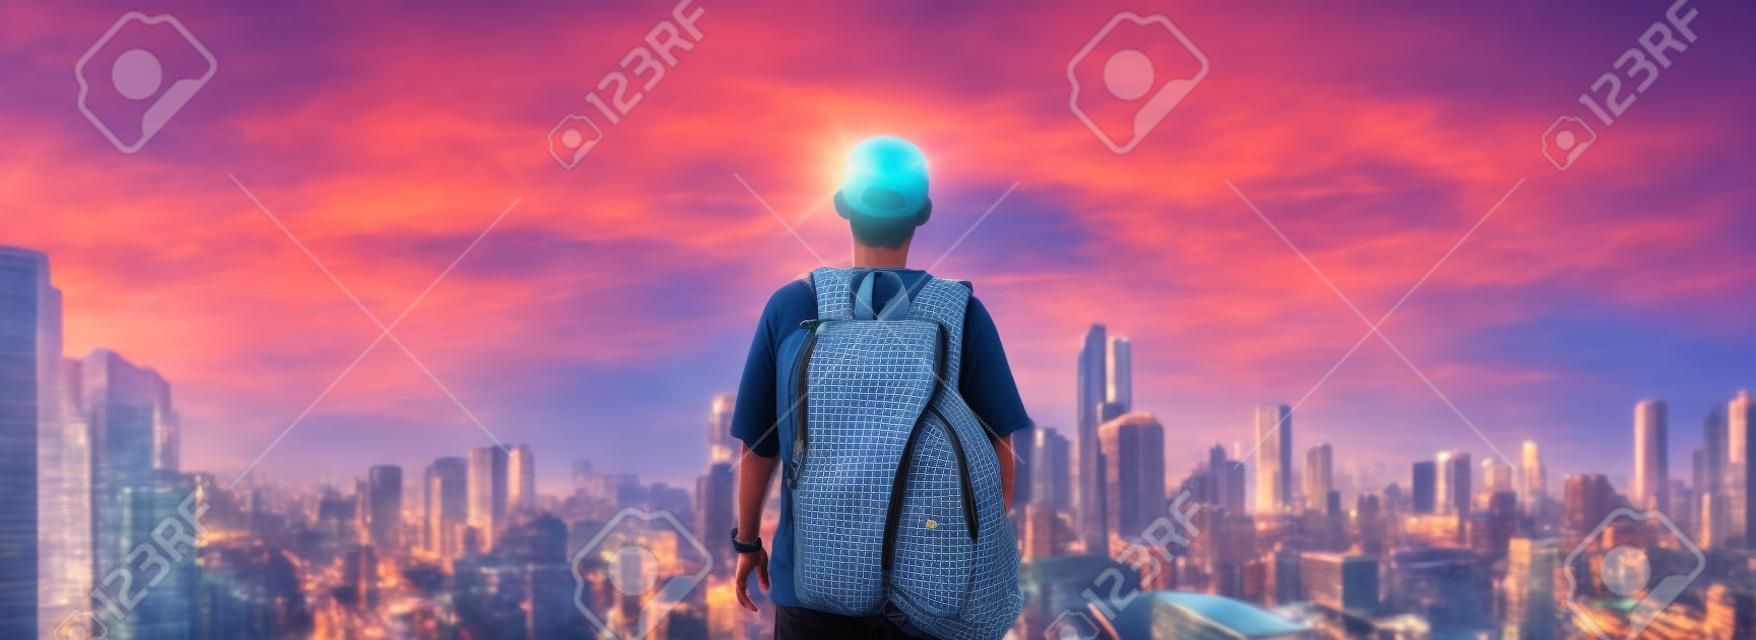 Panorama ein Mann mit Rucksack stehen in der Stadt Stadtansicht im Sonnenaufgang